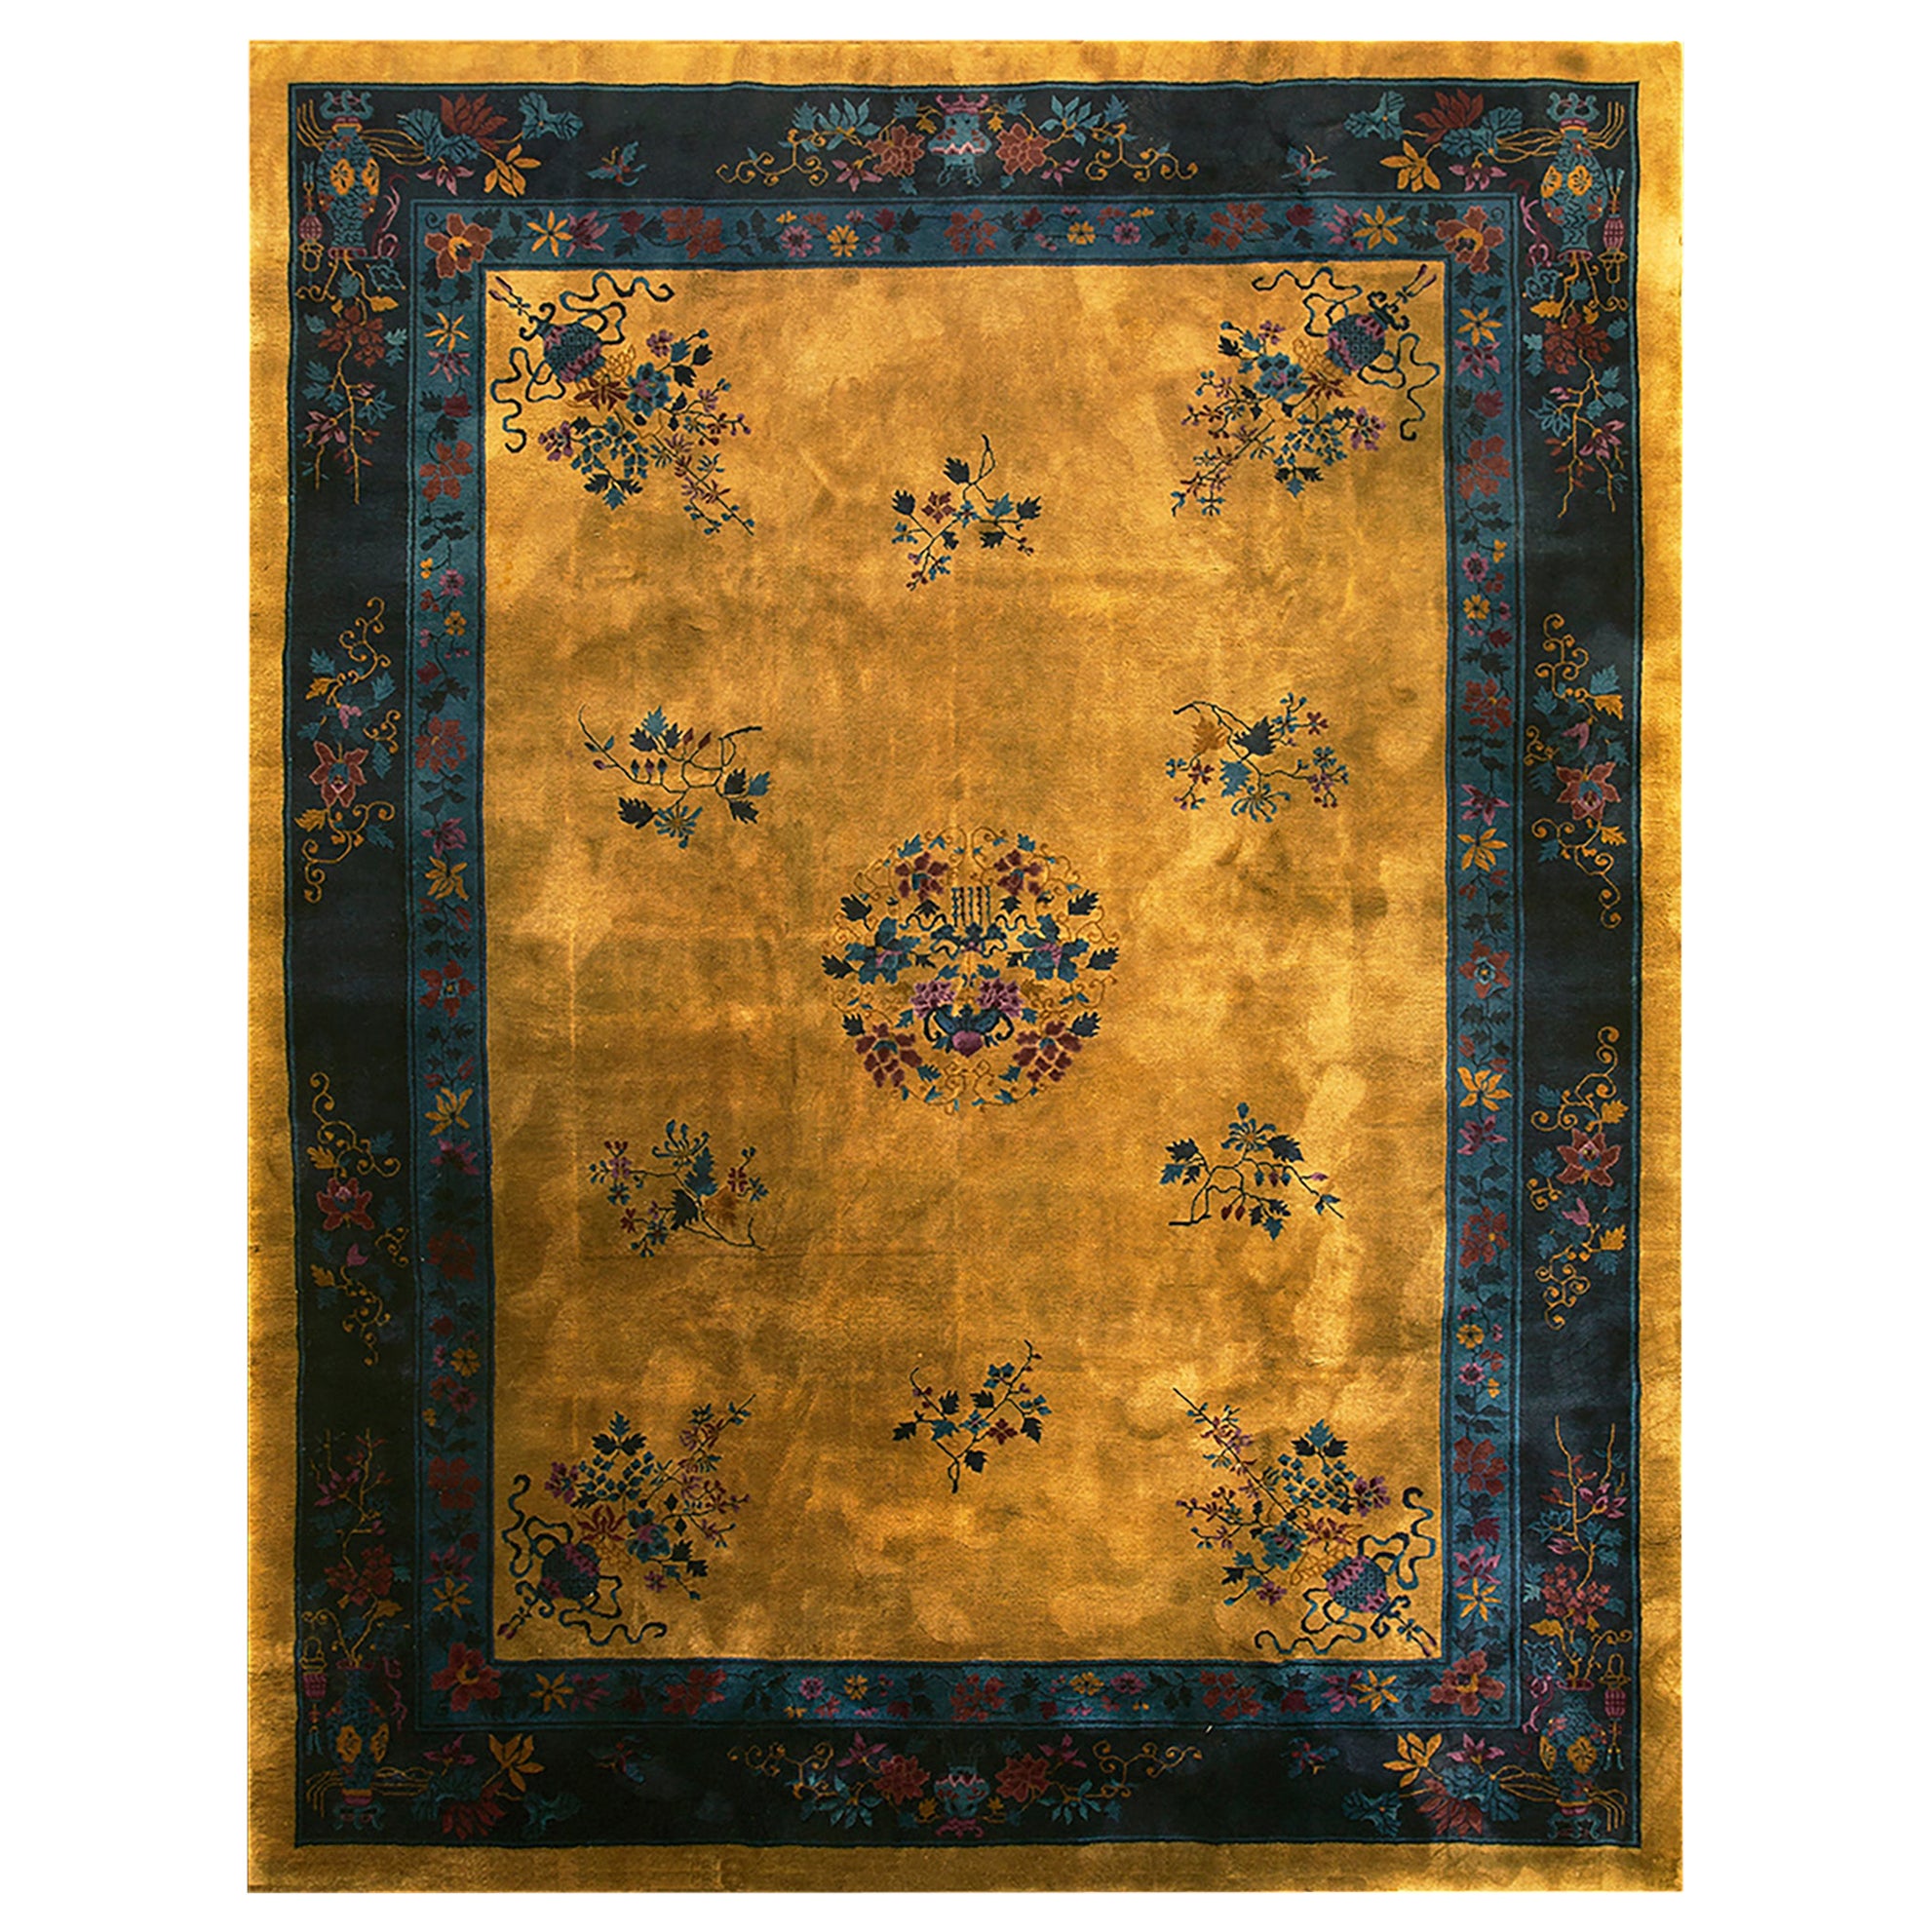 Chinesischer Art-Déco-Teppich aus den 1920er Jahren ( 9' x 11'8" - 275 x 355)